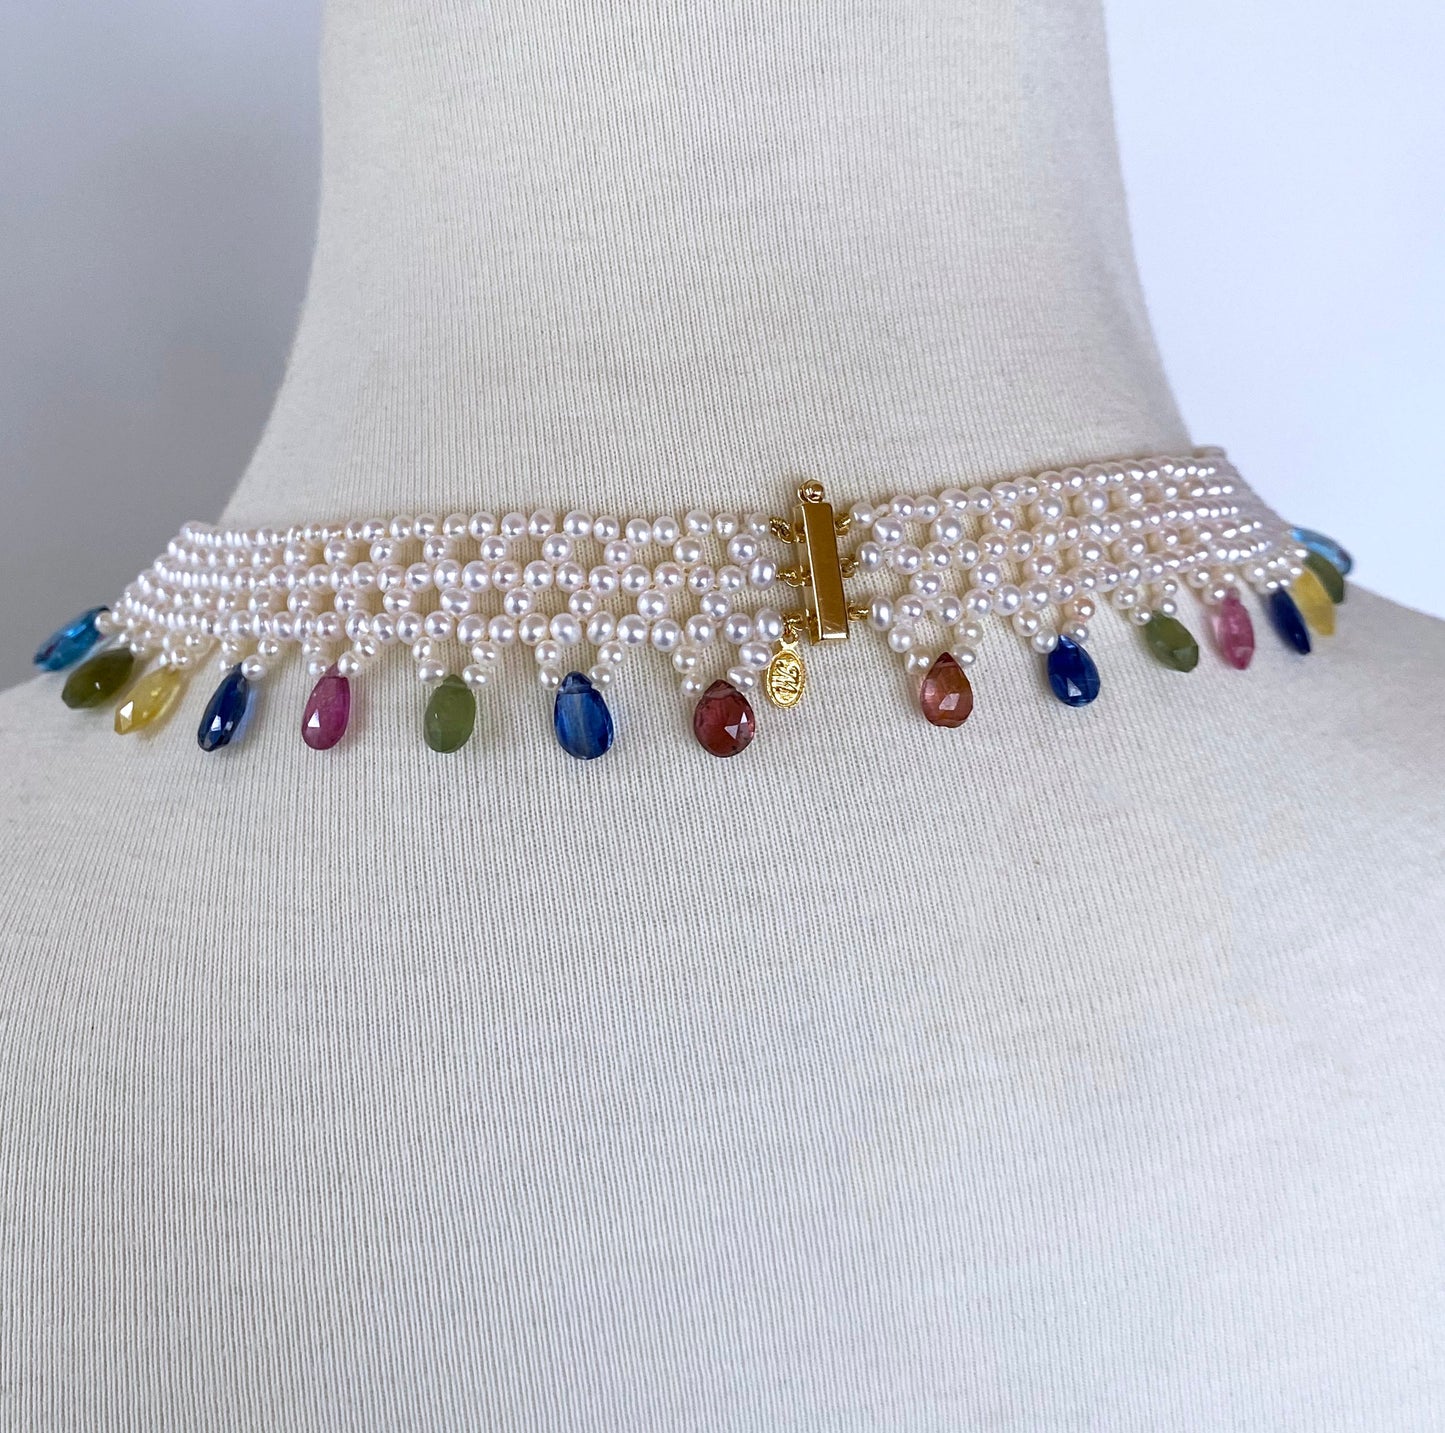 Pearl Woven Necklace w Multi Semi Precious Stones and 14k Yellow Gold